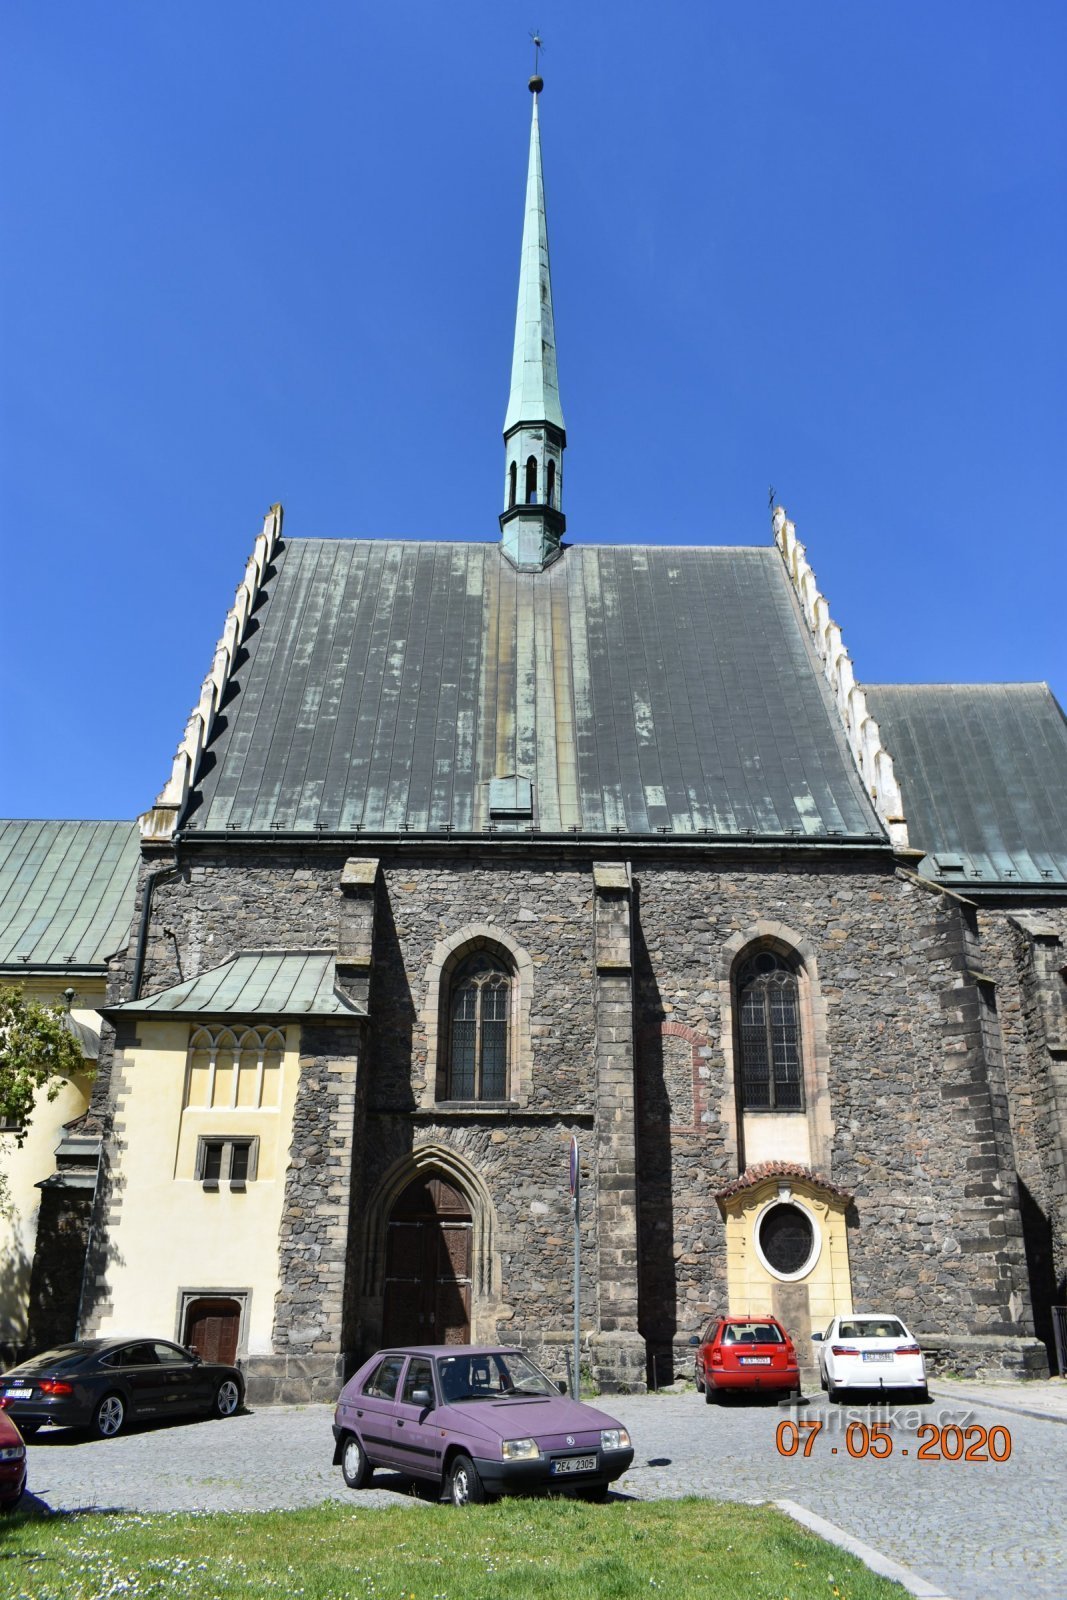 Biserica Sfântul Bartolomeu din Pardubice